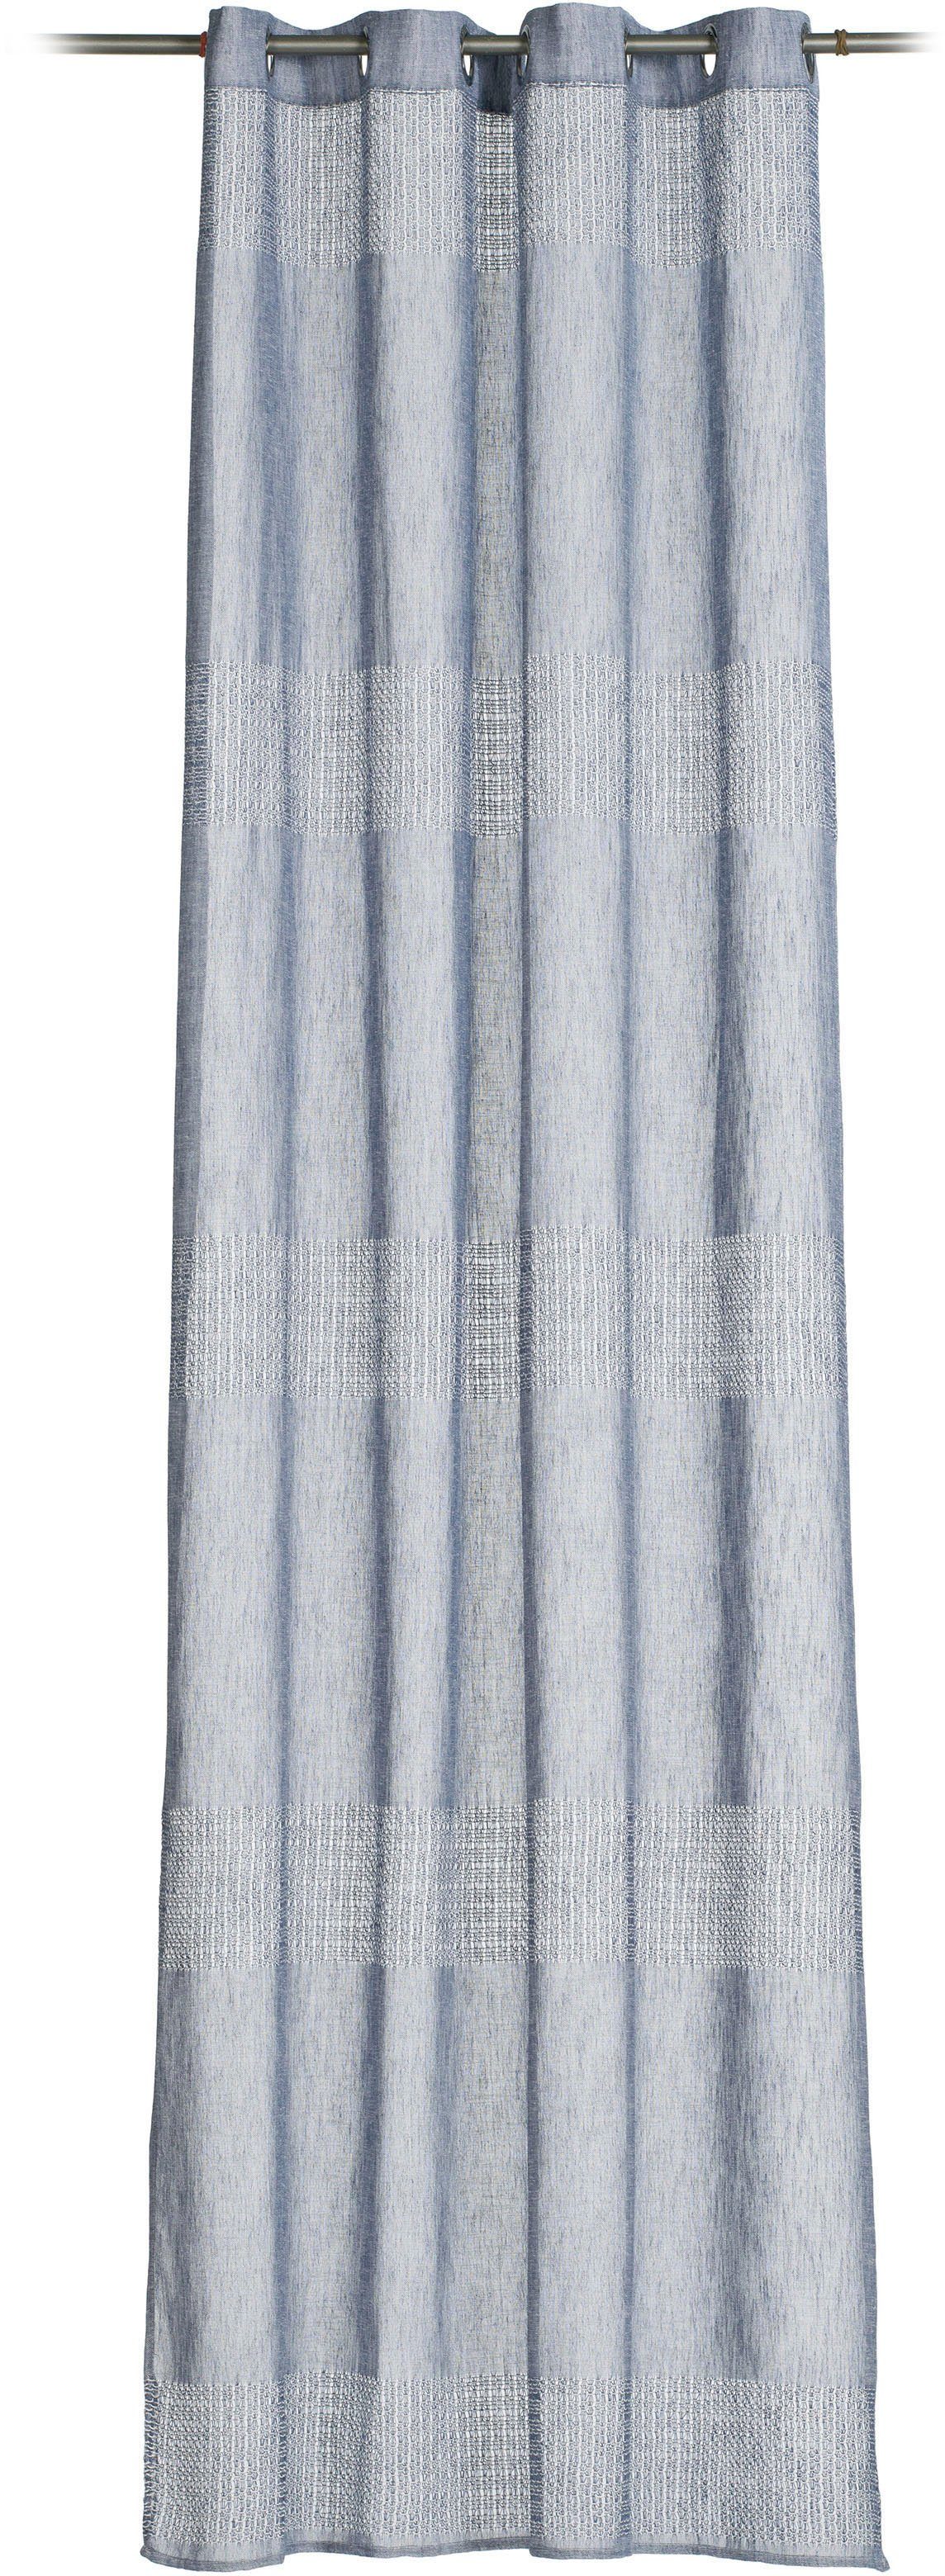 Vorhang Marrakesch - Ösenschal, Gözze, Ösen (1 St), transparent, HxB: 245x140, transparentes Gewebe inkl. Querstreifen blau